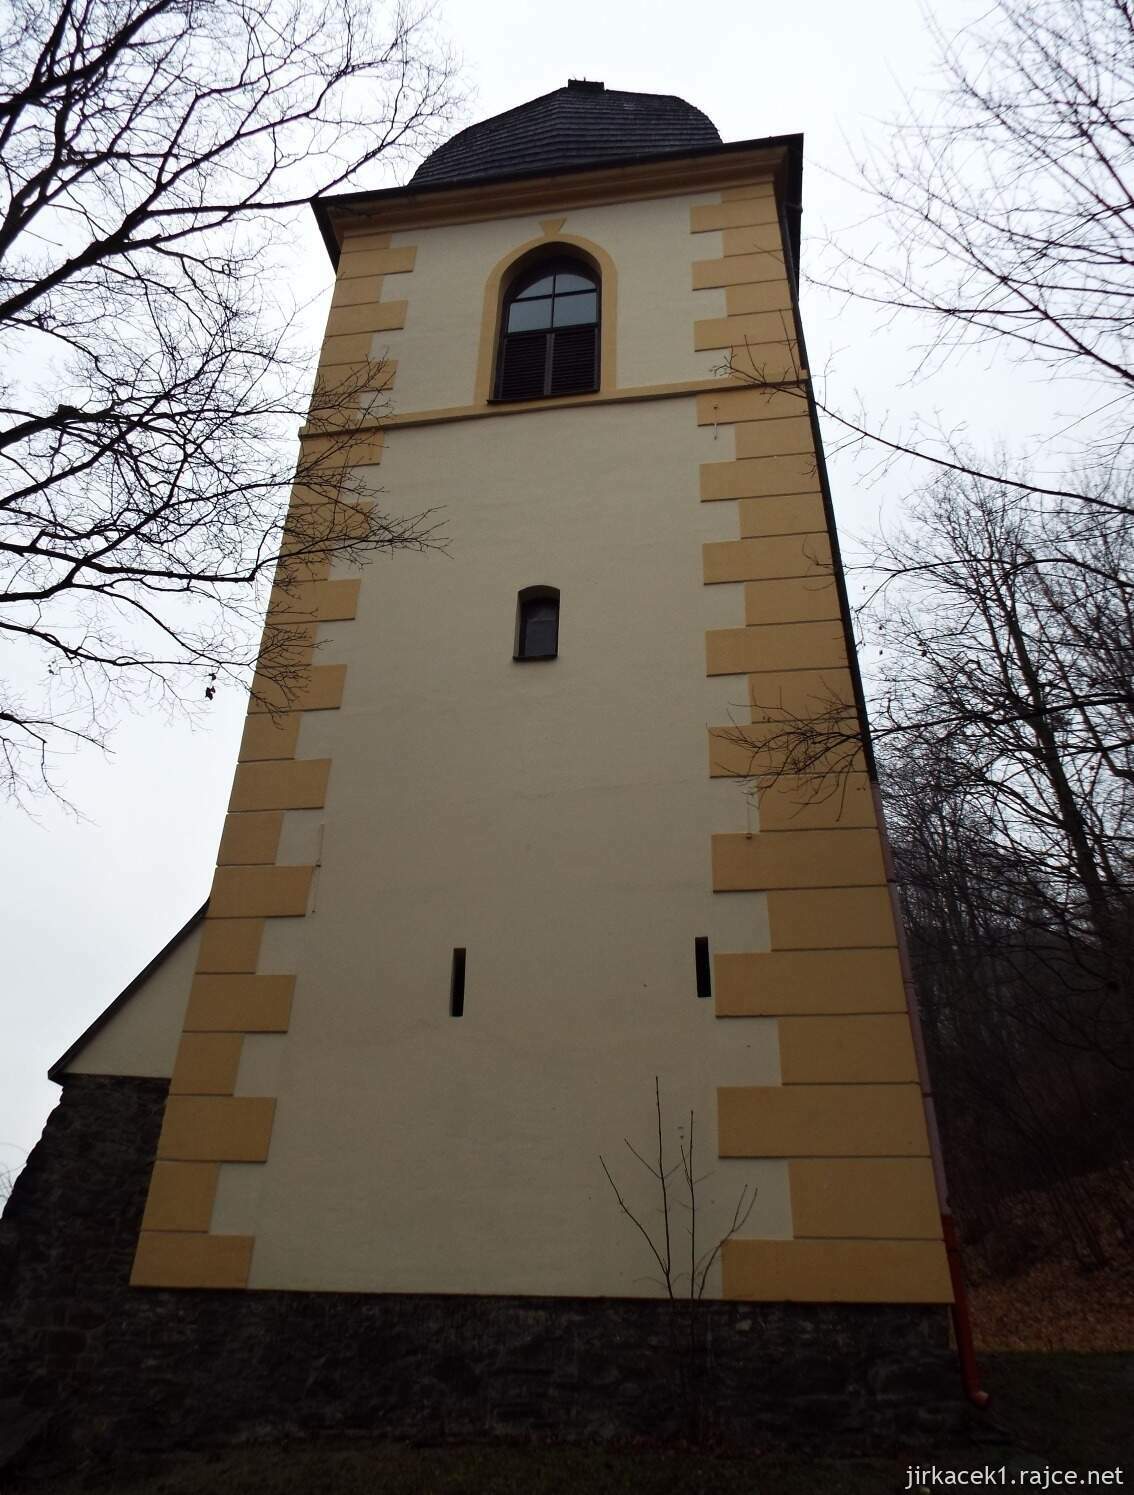 I - Fulnek - kostel Nejsvětější Trojice 34 - Černá věž a zvonice nad kostelem